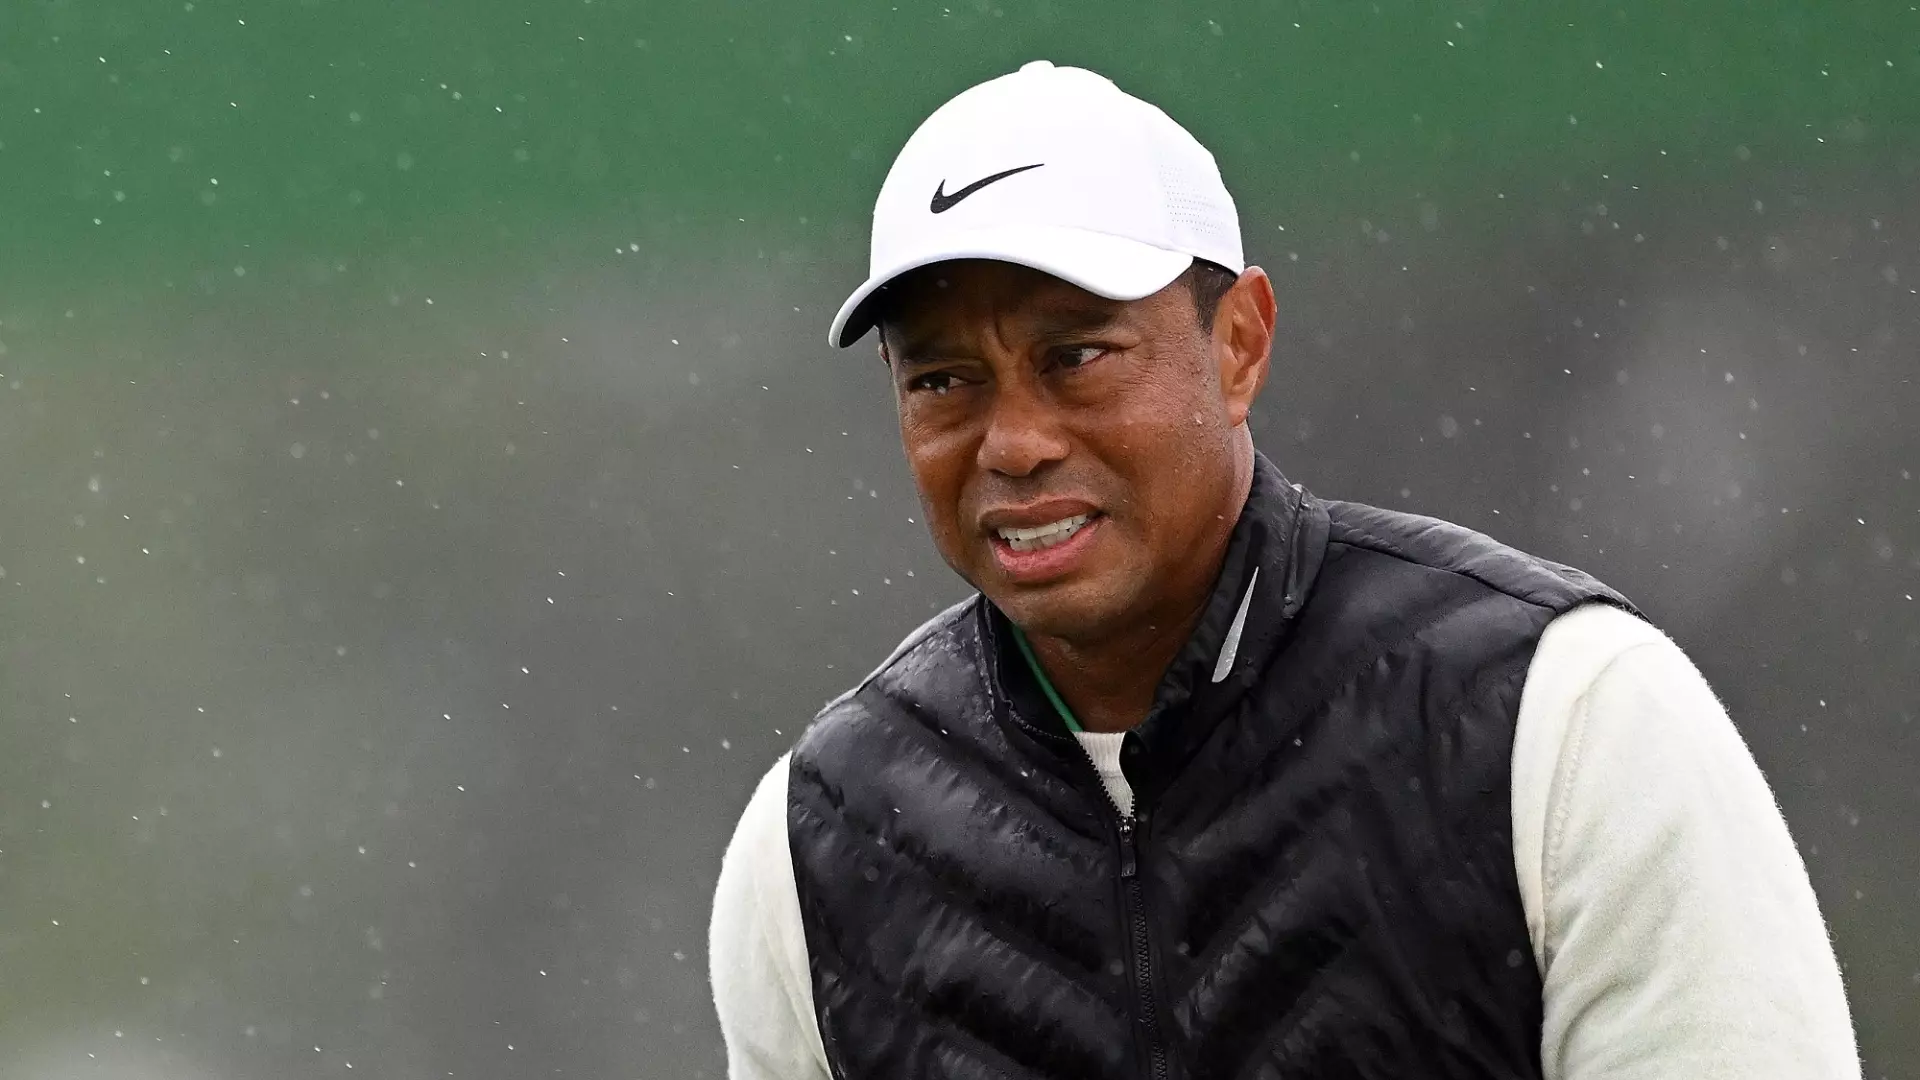 Tiger Woods infortunato, niente Championship